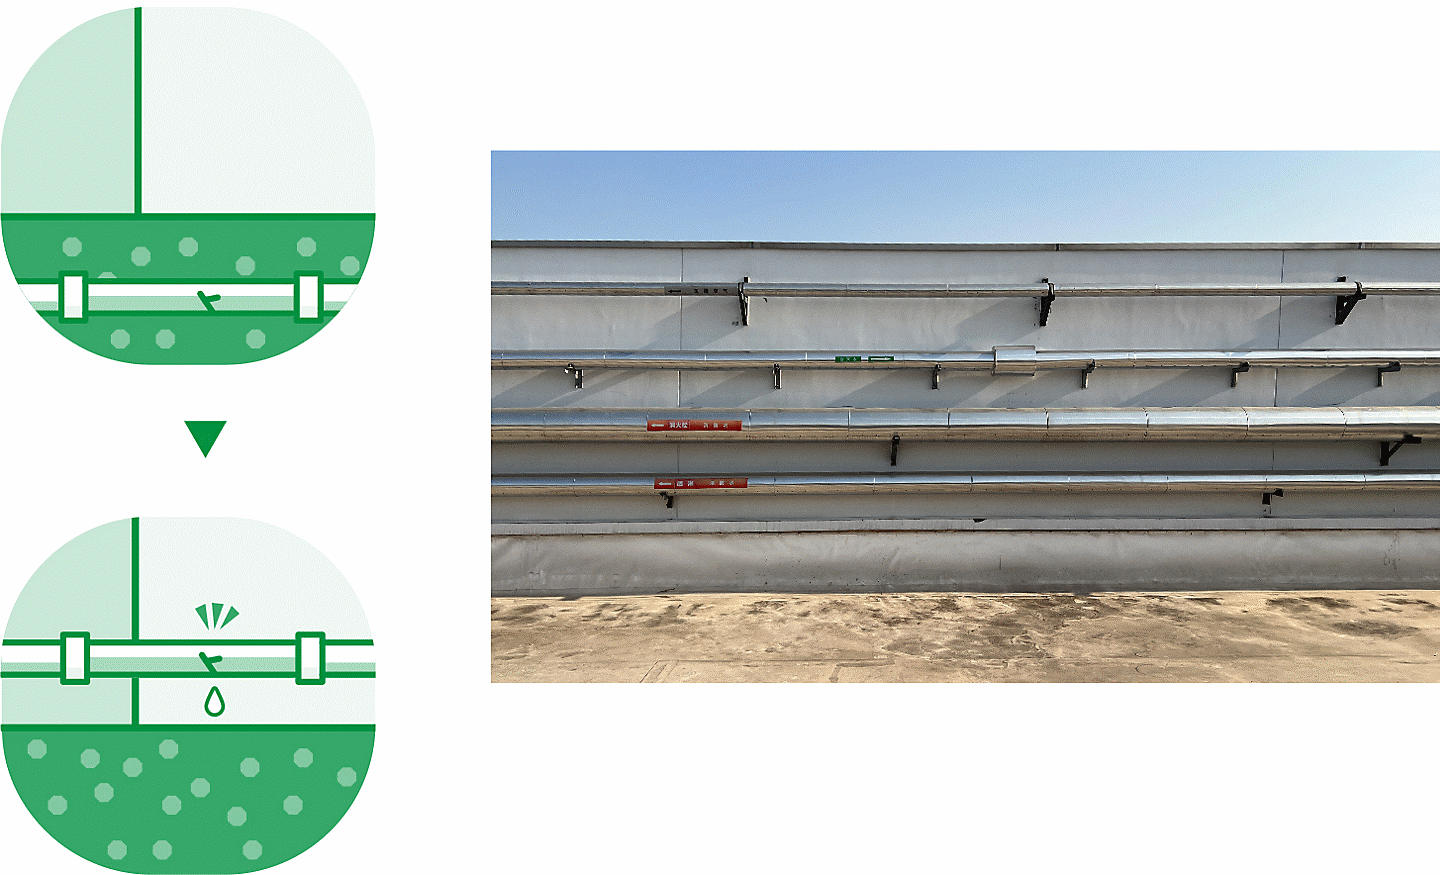 Schéma à gauche (L) et photo (R) représentant le déterrement des conduites d'eau afin de simplifier la réparation des fuites, et photo d'une conduite d'eau à droite.